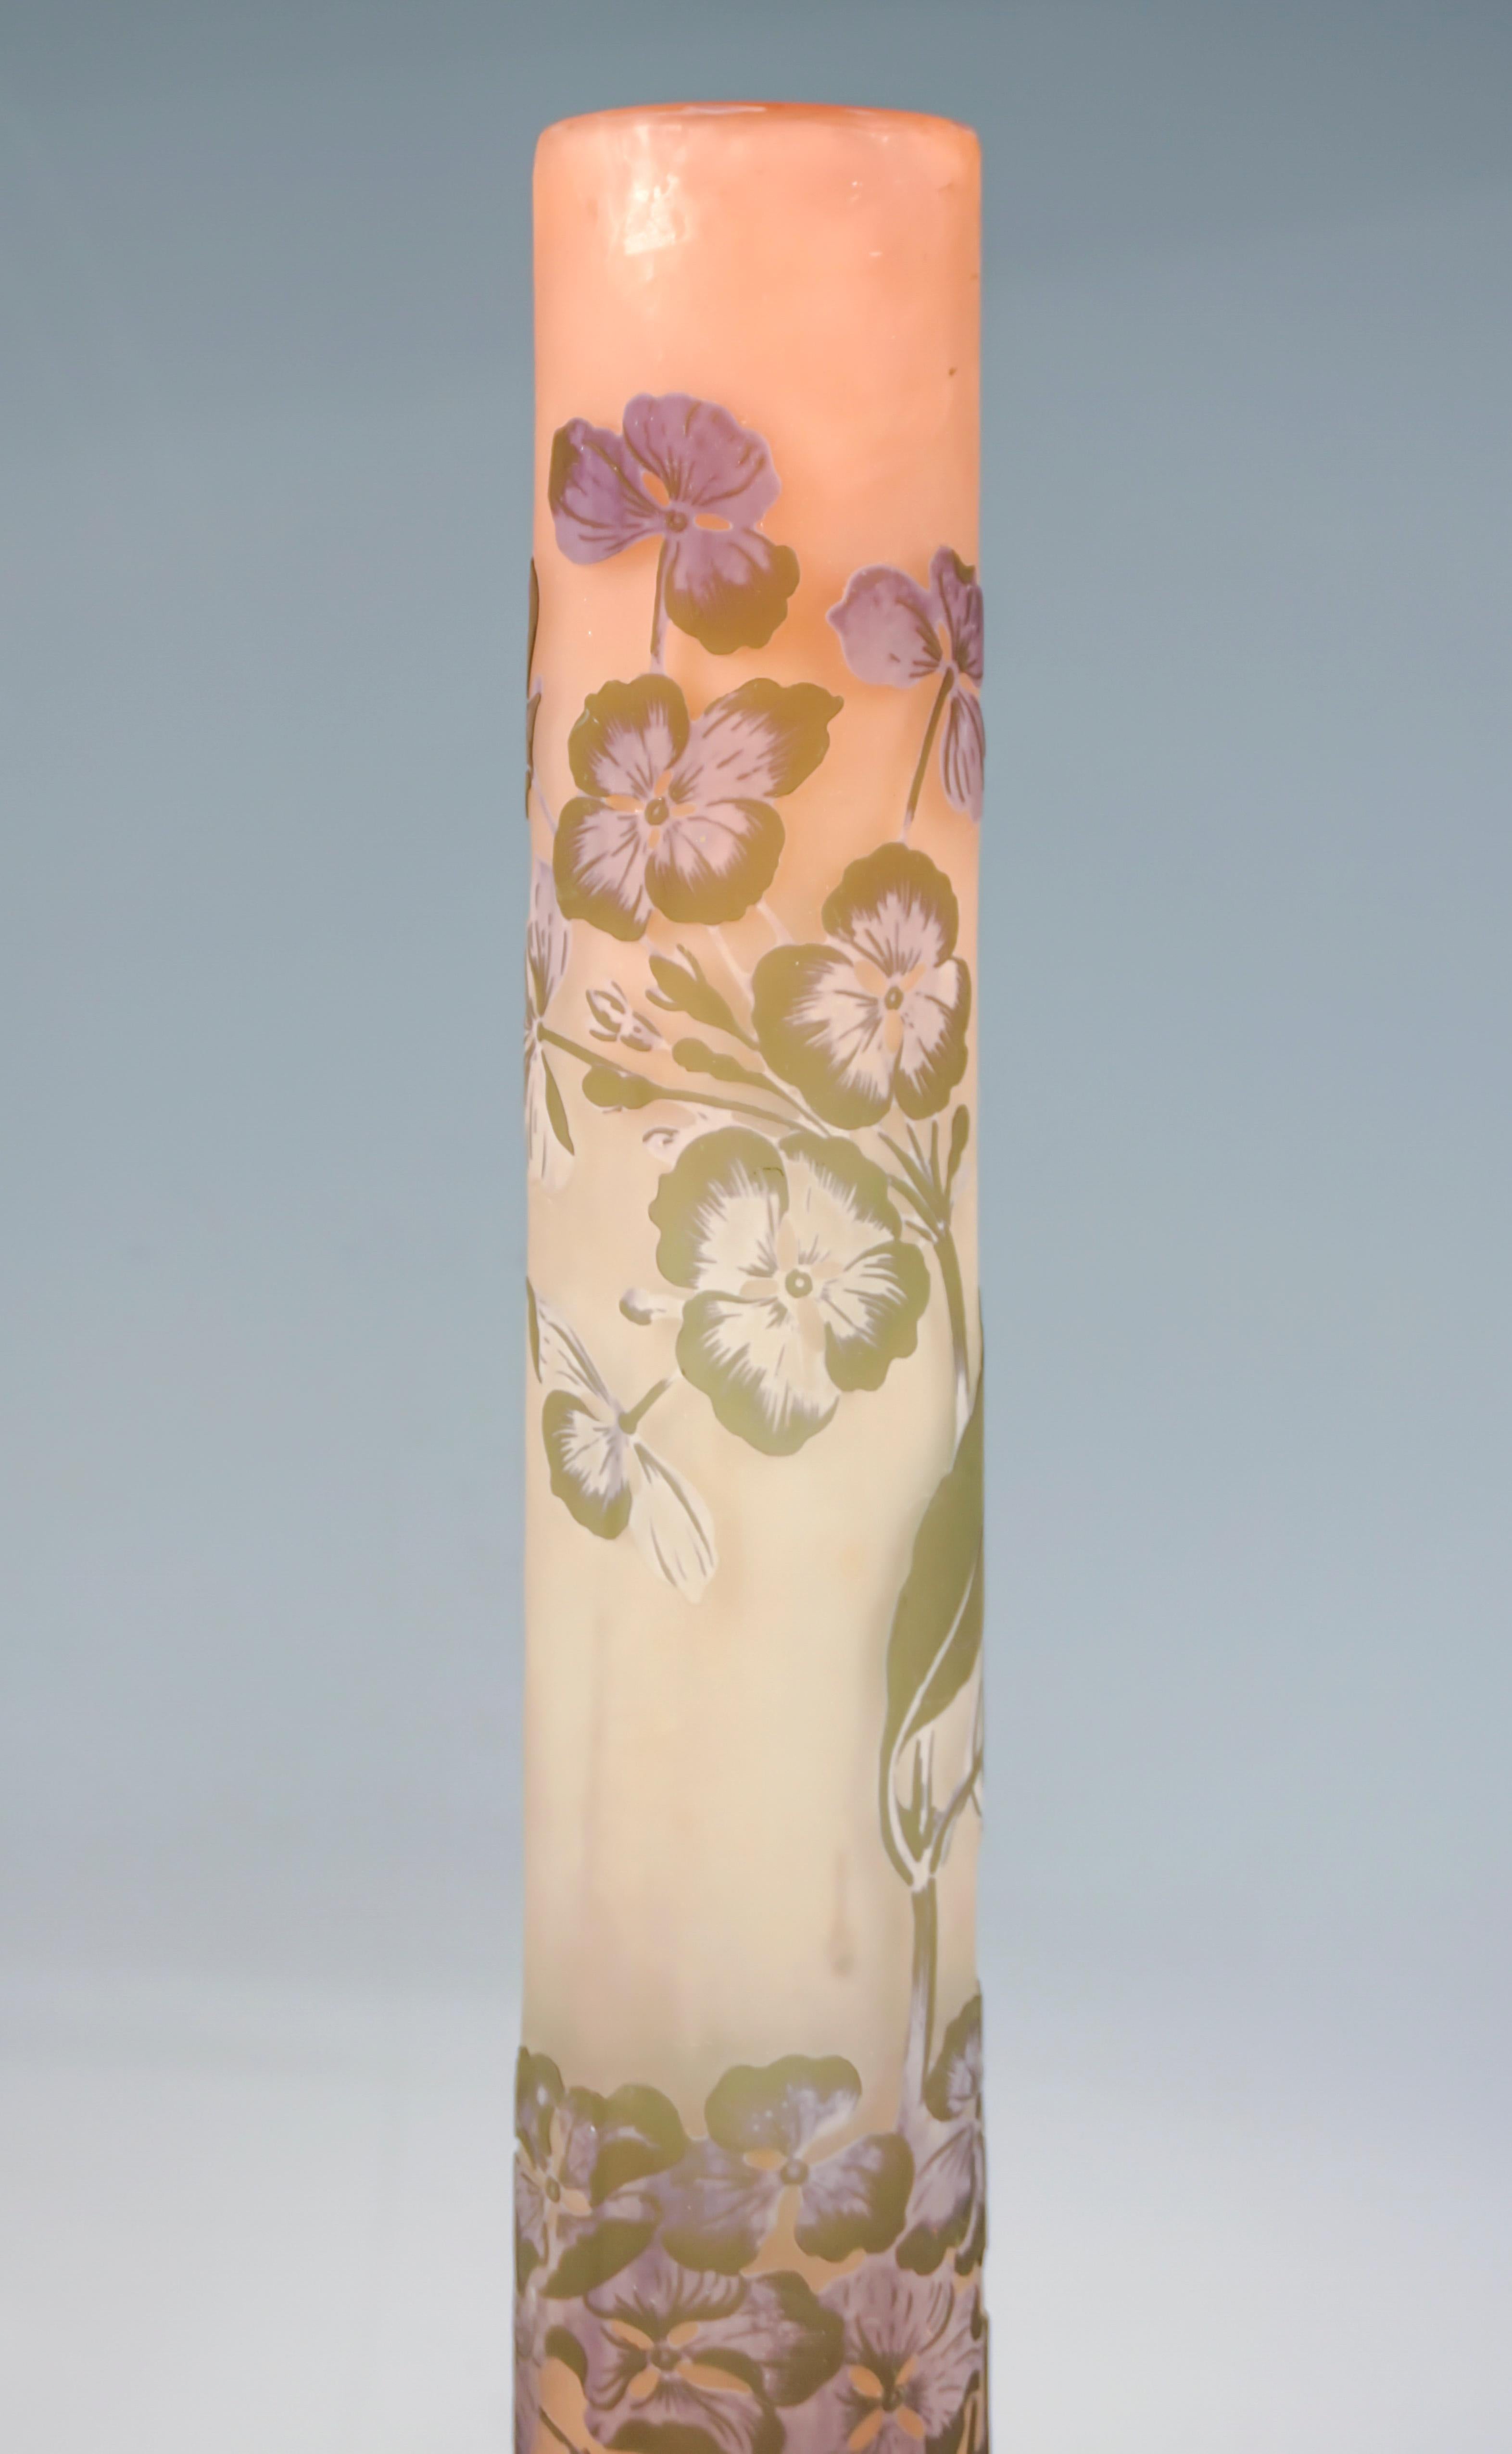 Glass Large Slender Émile Gallé Art Nouveau Vase with Hydrangea Decor, France, c 1906 For Sale